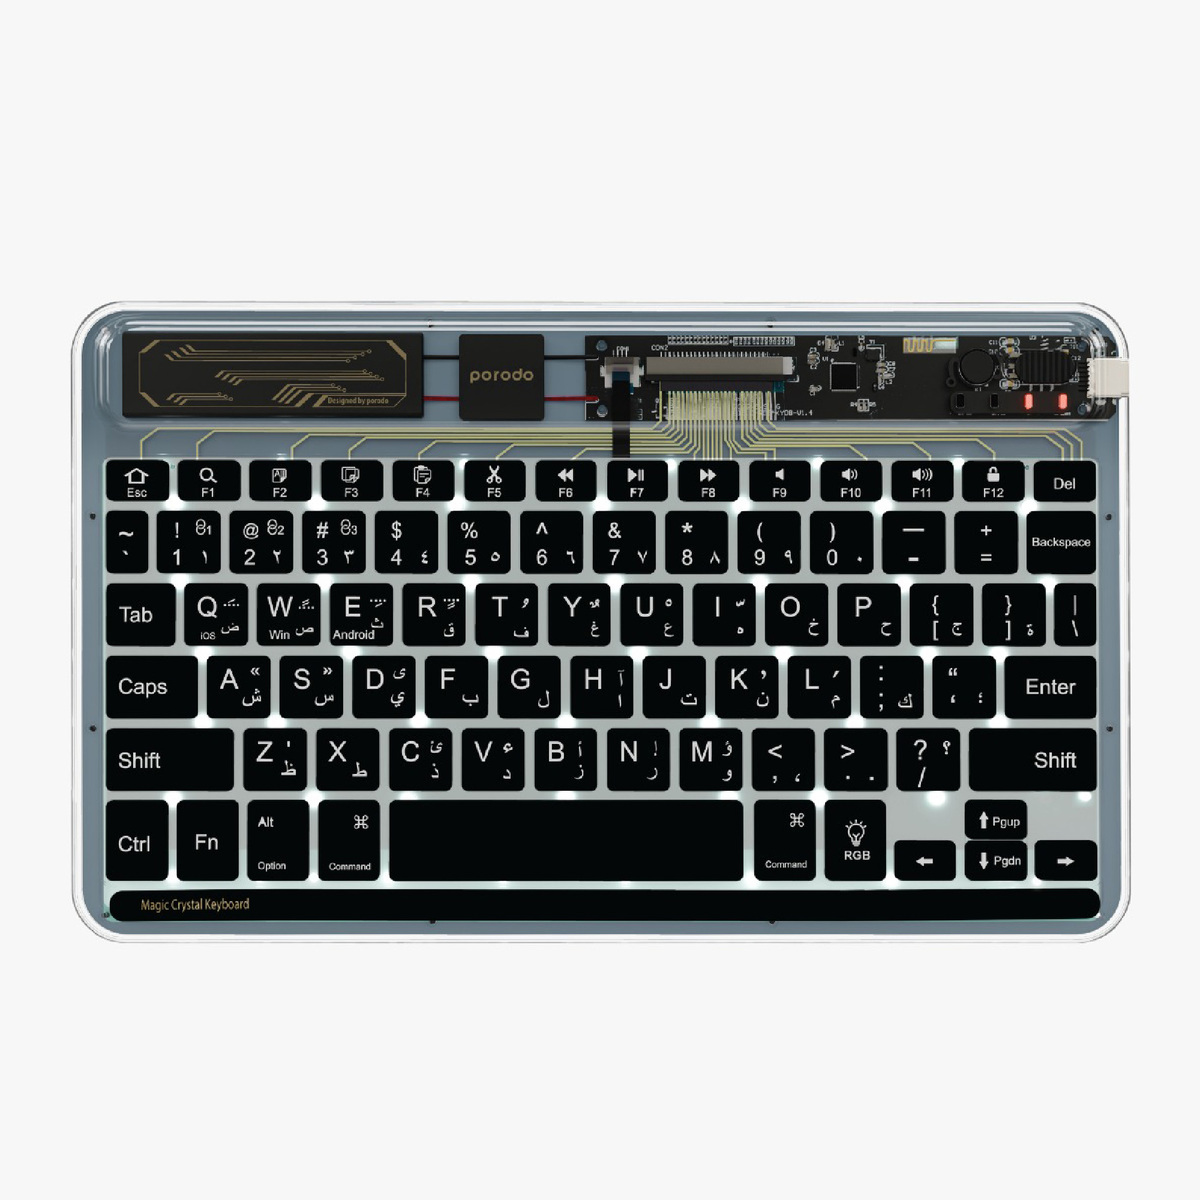 بورودو لوحة مفاتيح كريستال شيل فائقة النحافة - أسود TRPBTKB Bk